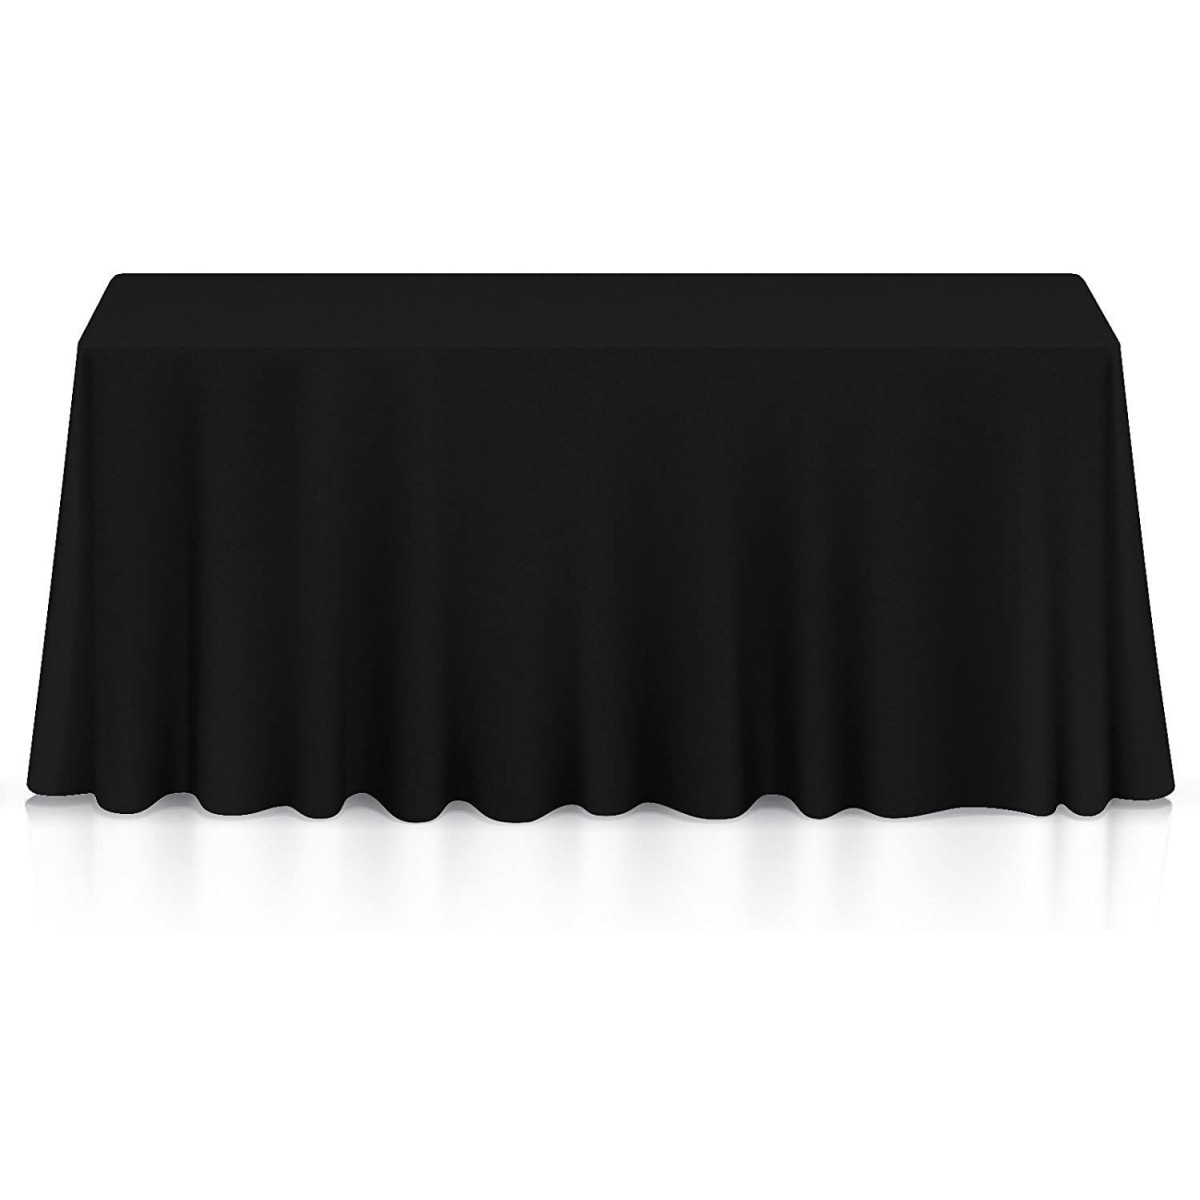 Tovaglia nera per feste, in cotone e nylon, da 360 x 177 cm